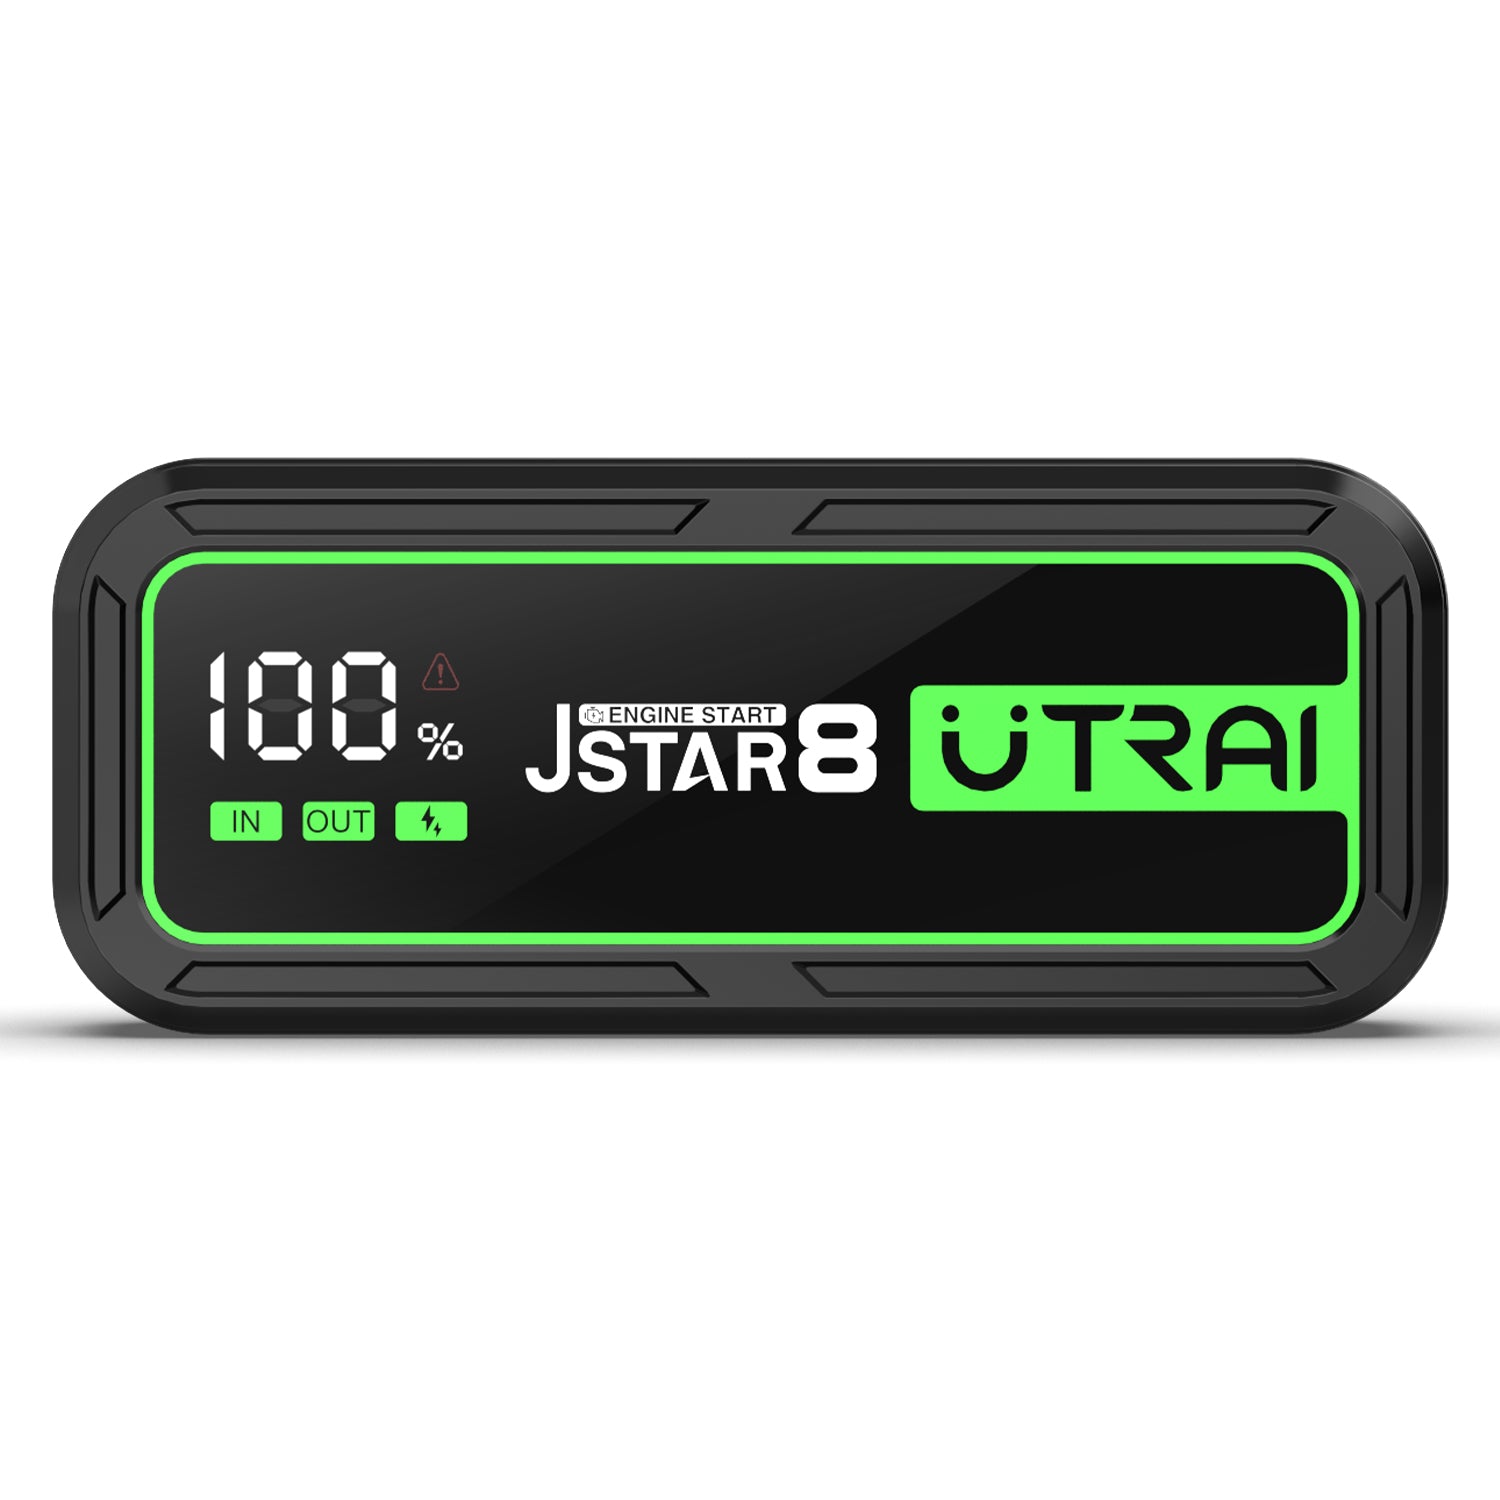 UTRAI Autostarthilfe Powerbank 13200mAh mit 1400A Spitzenstrom für